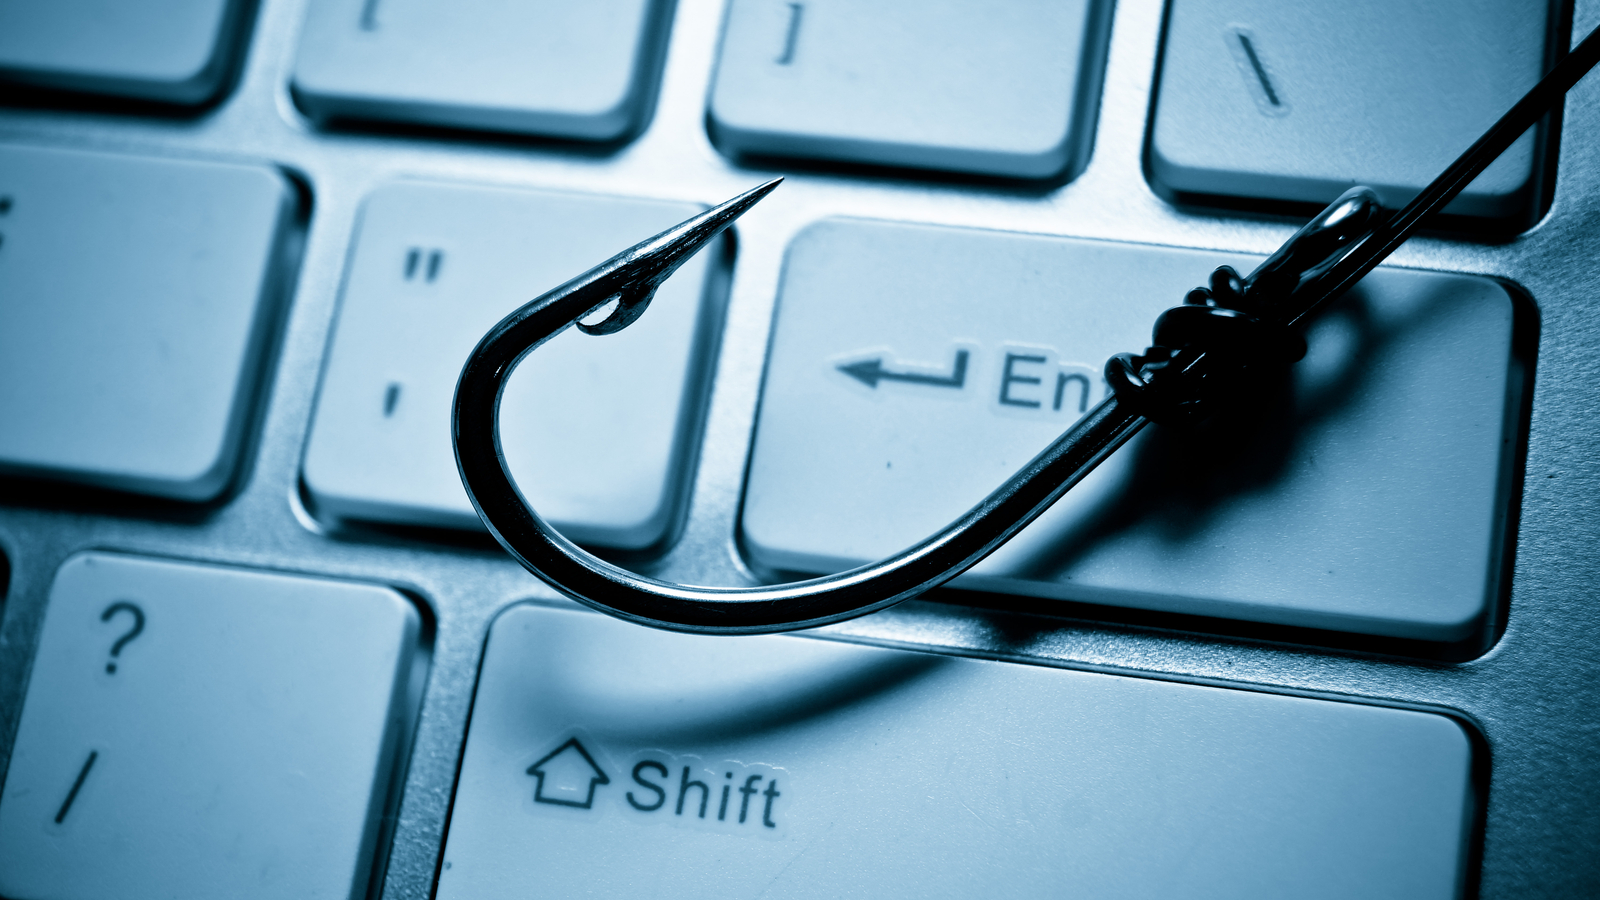 Quelles sont les marques les plus usurpées pour le phishing ?